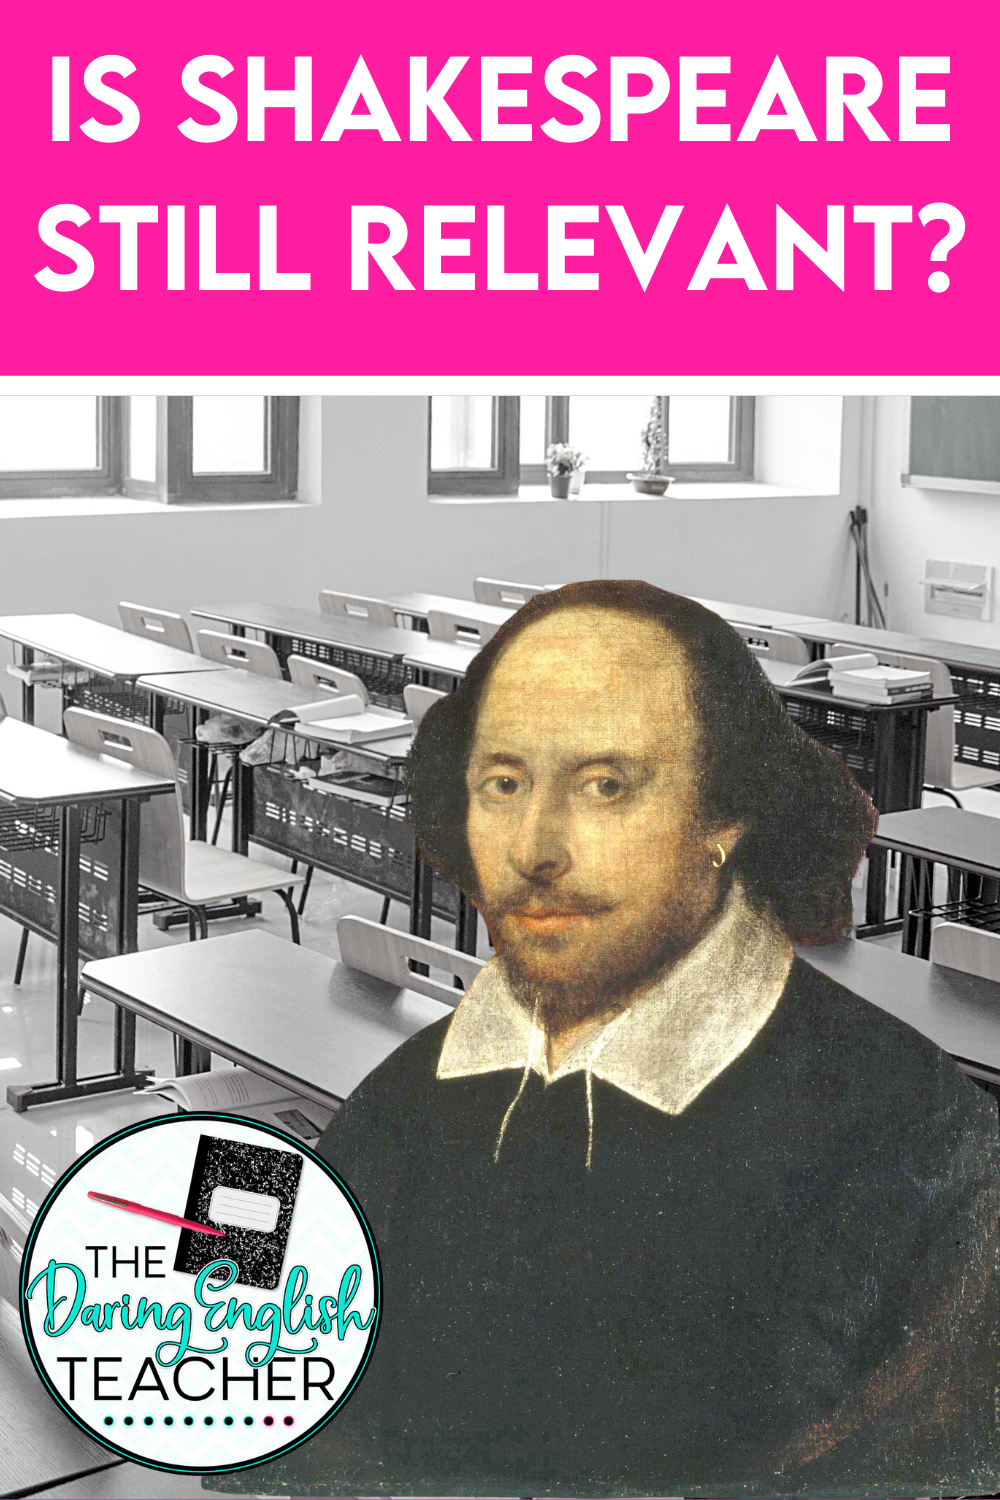 Is teaching Shakespeare still revelant